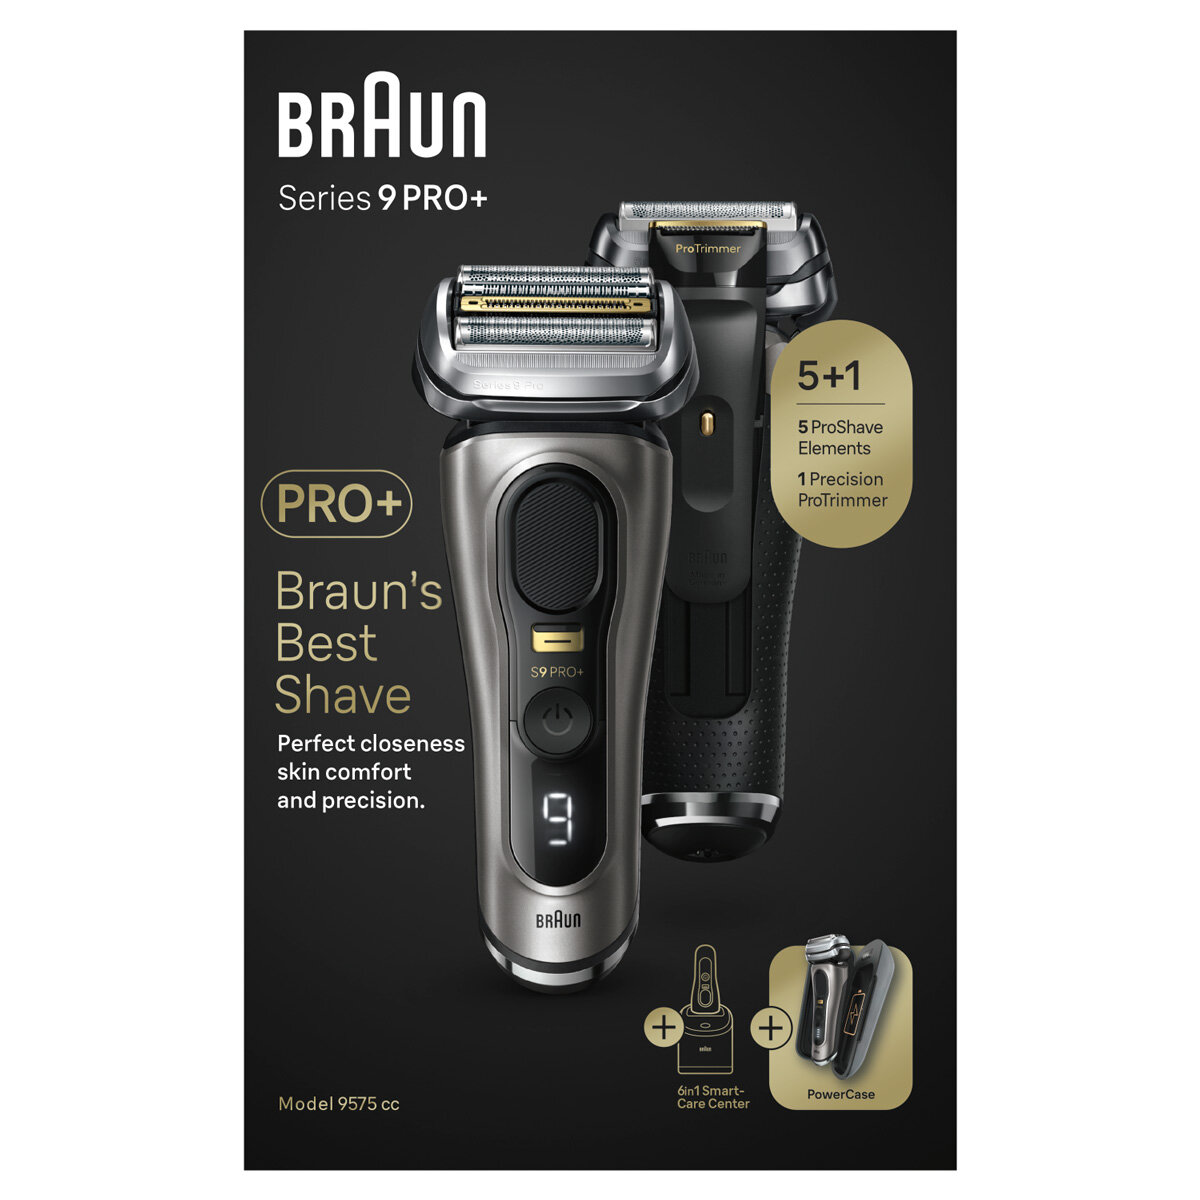 Braun Series 9 Pro 9477cc